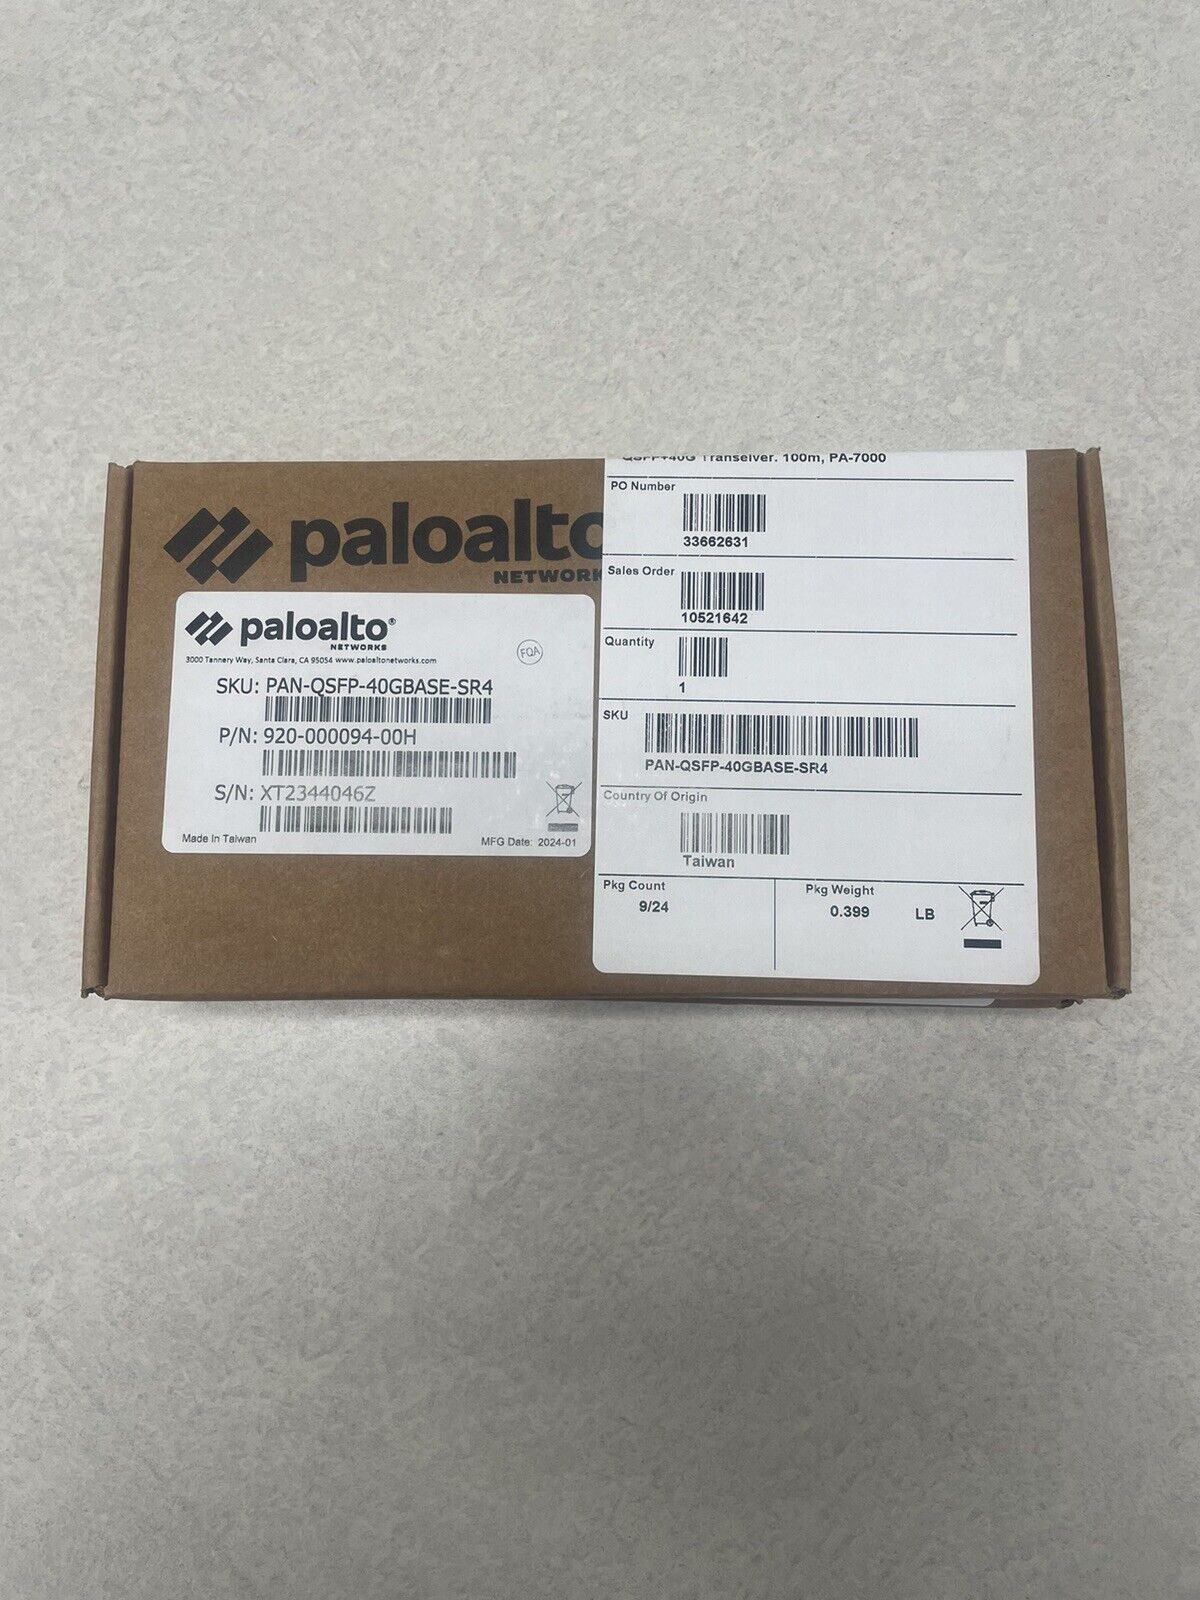 Palo Alto PAN-QSFP-40GBASE-SR4 40Gb QSFP+SR4 for PA-7000 Series, PA-5200 Series.